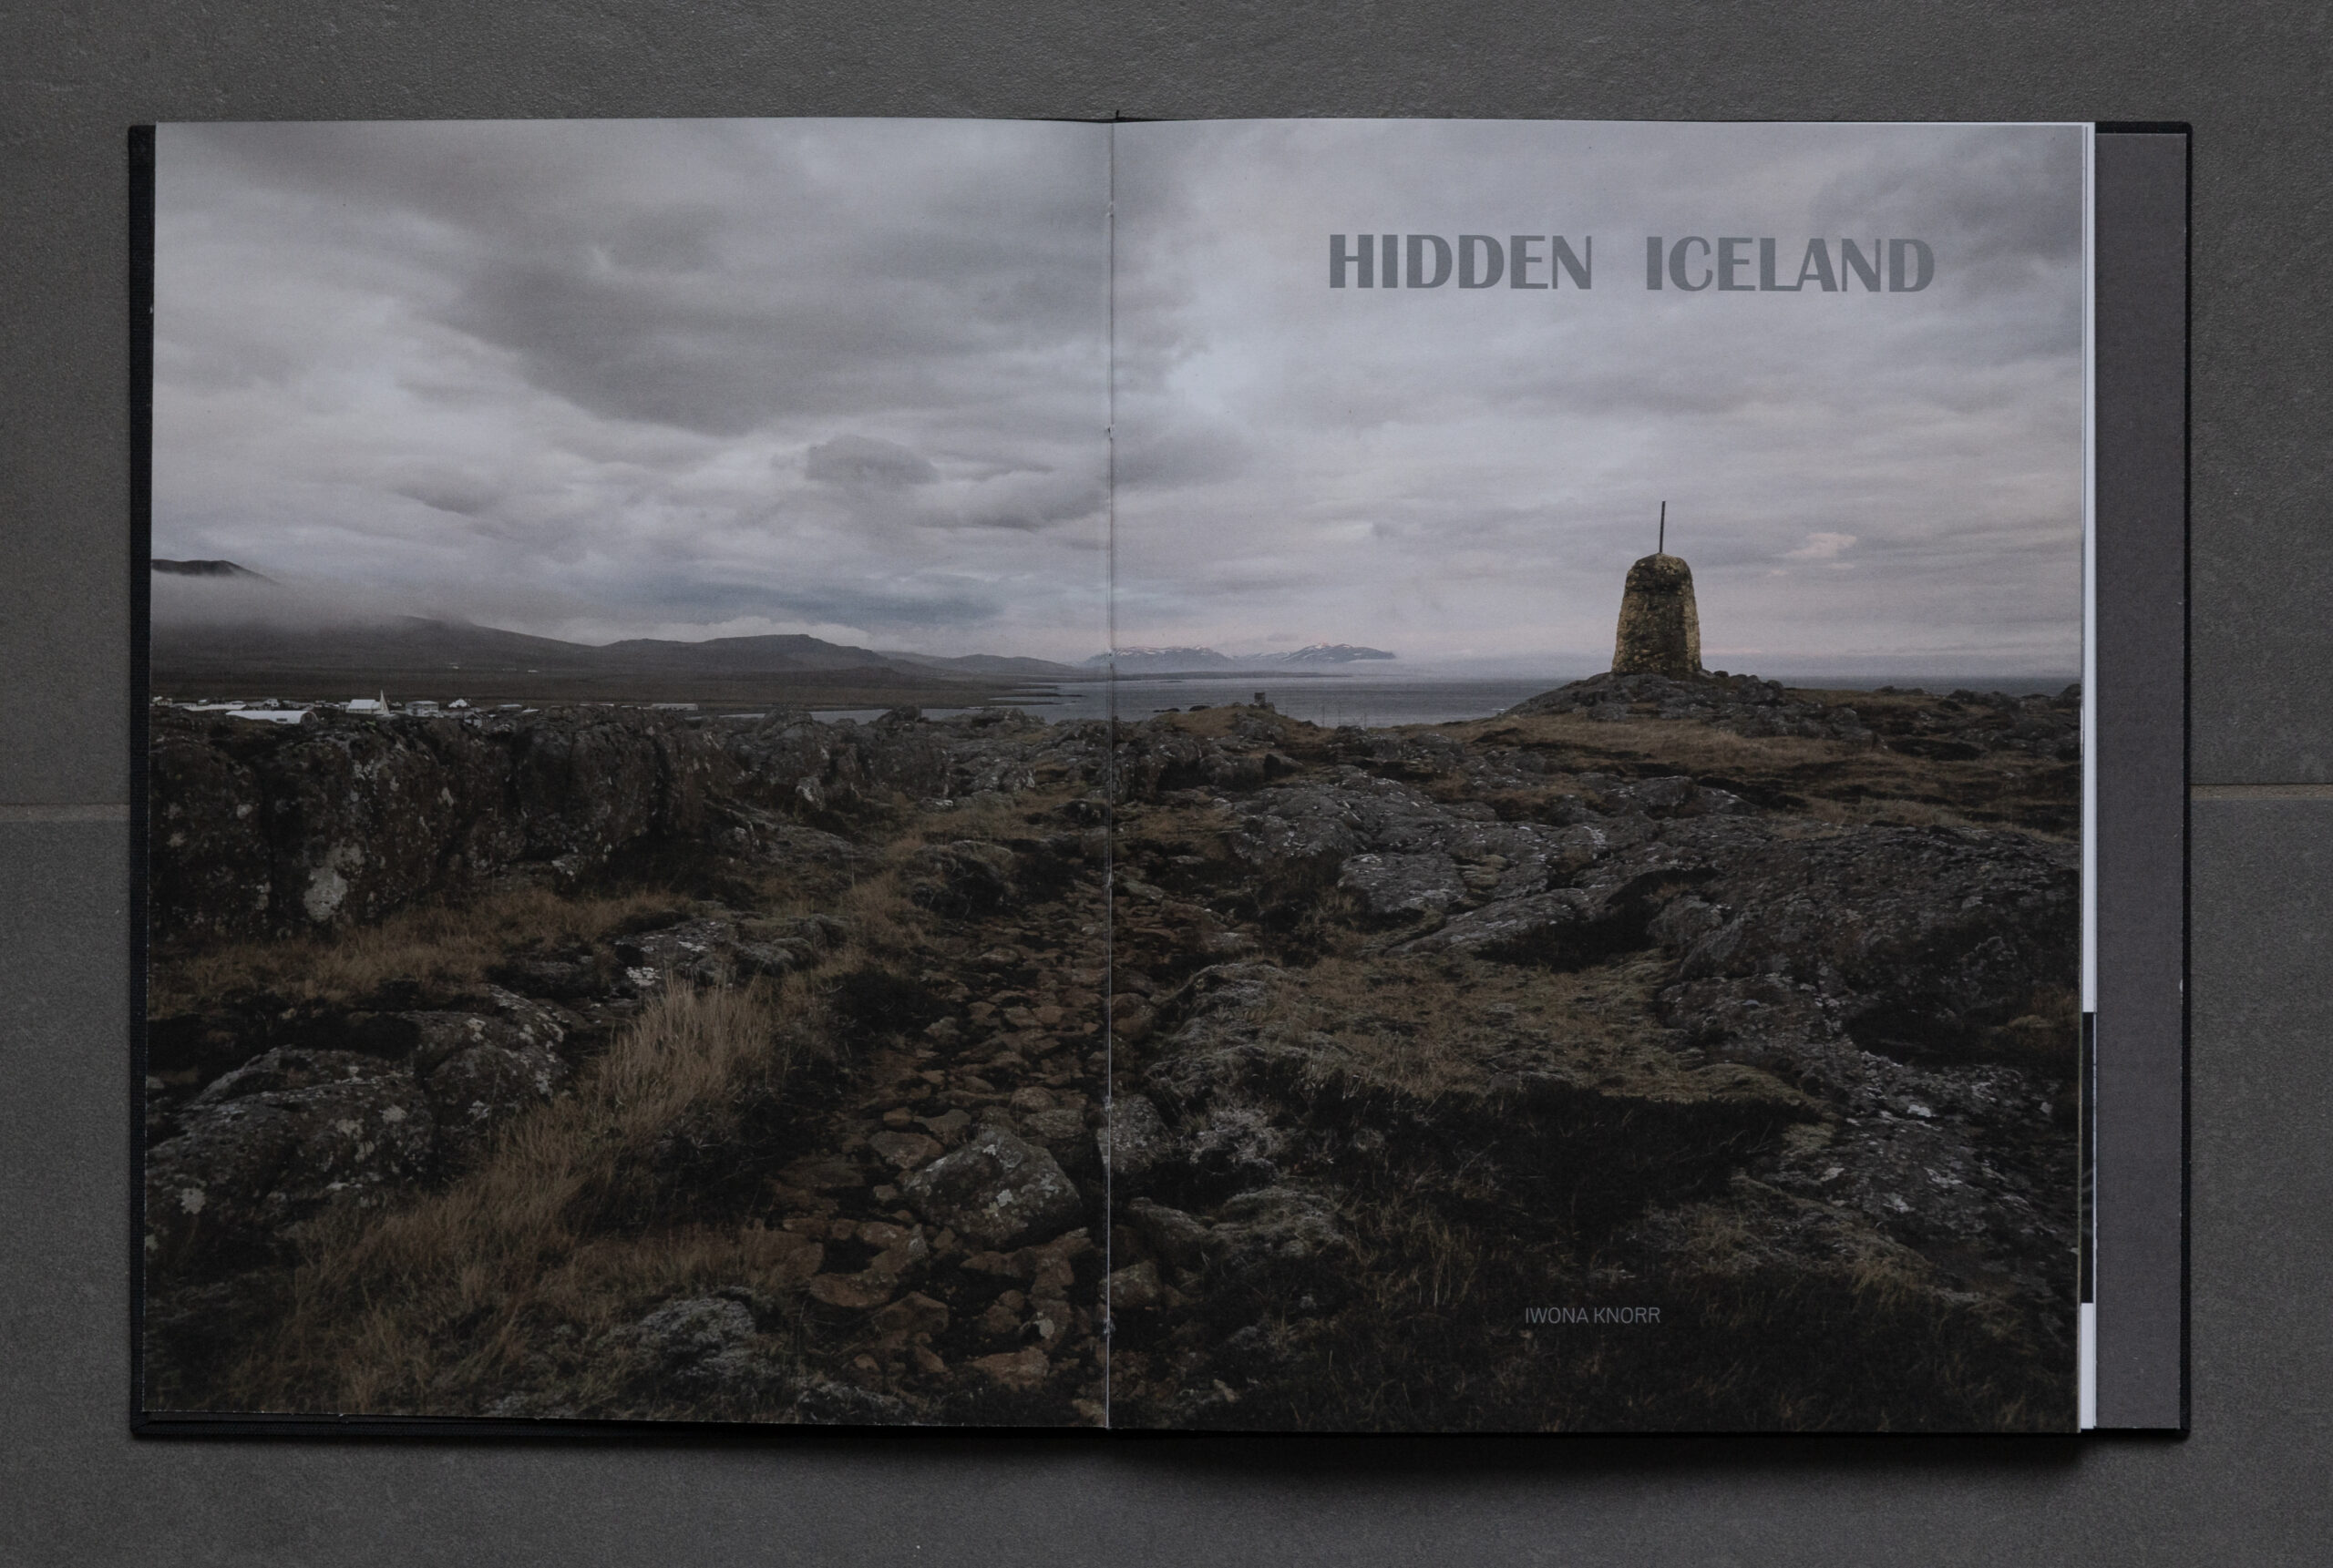 HIDDEN ICELAND published